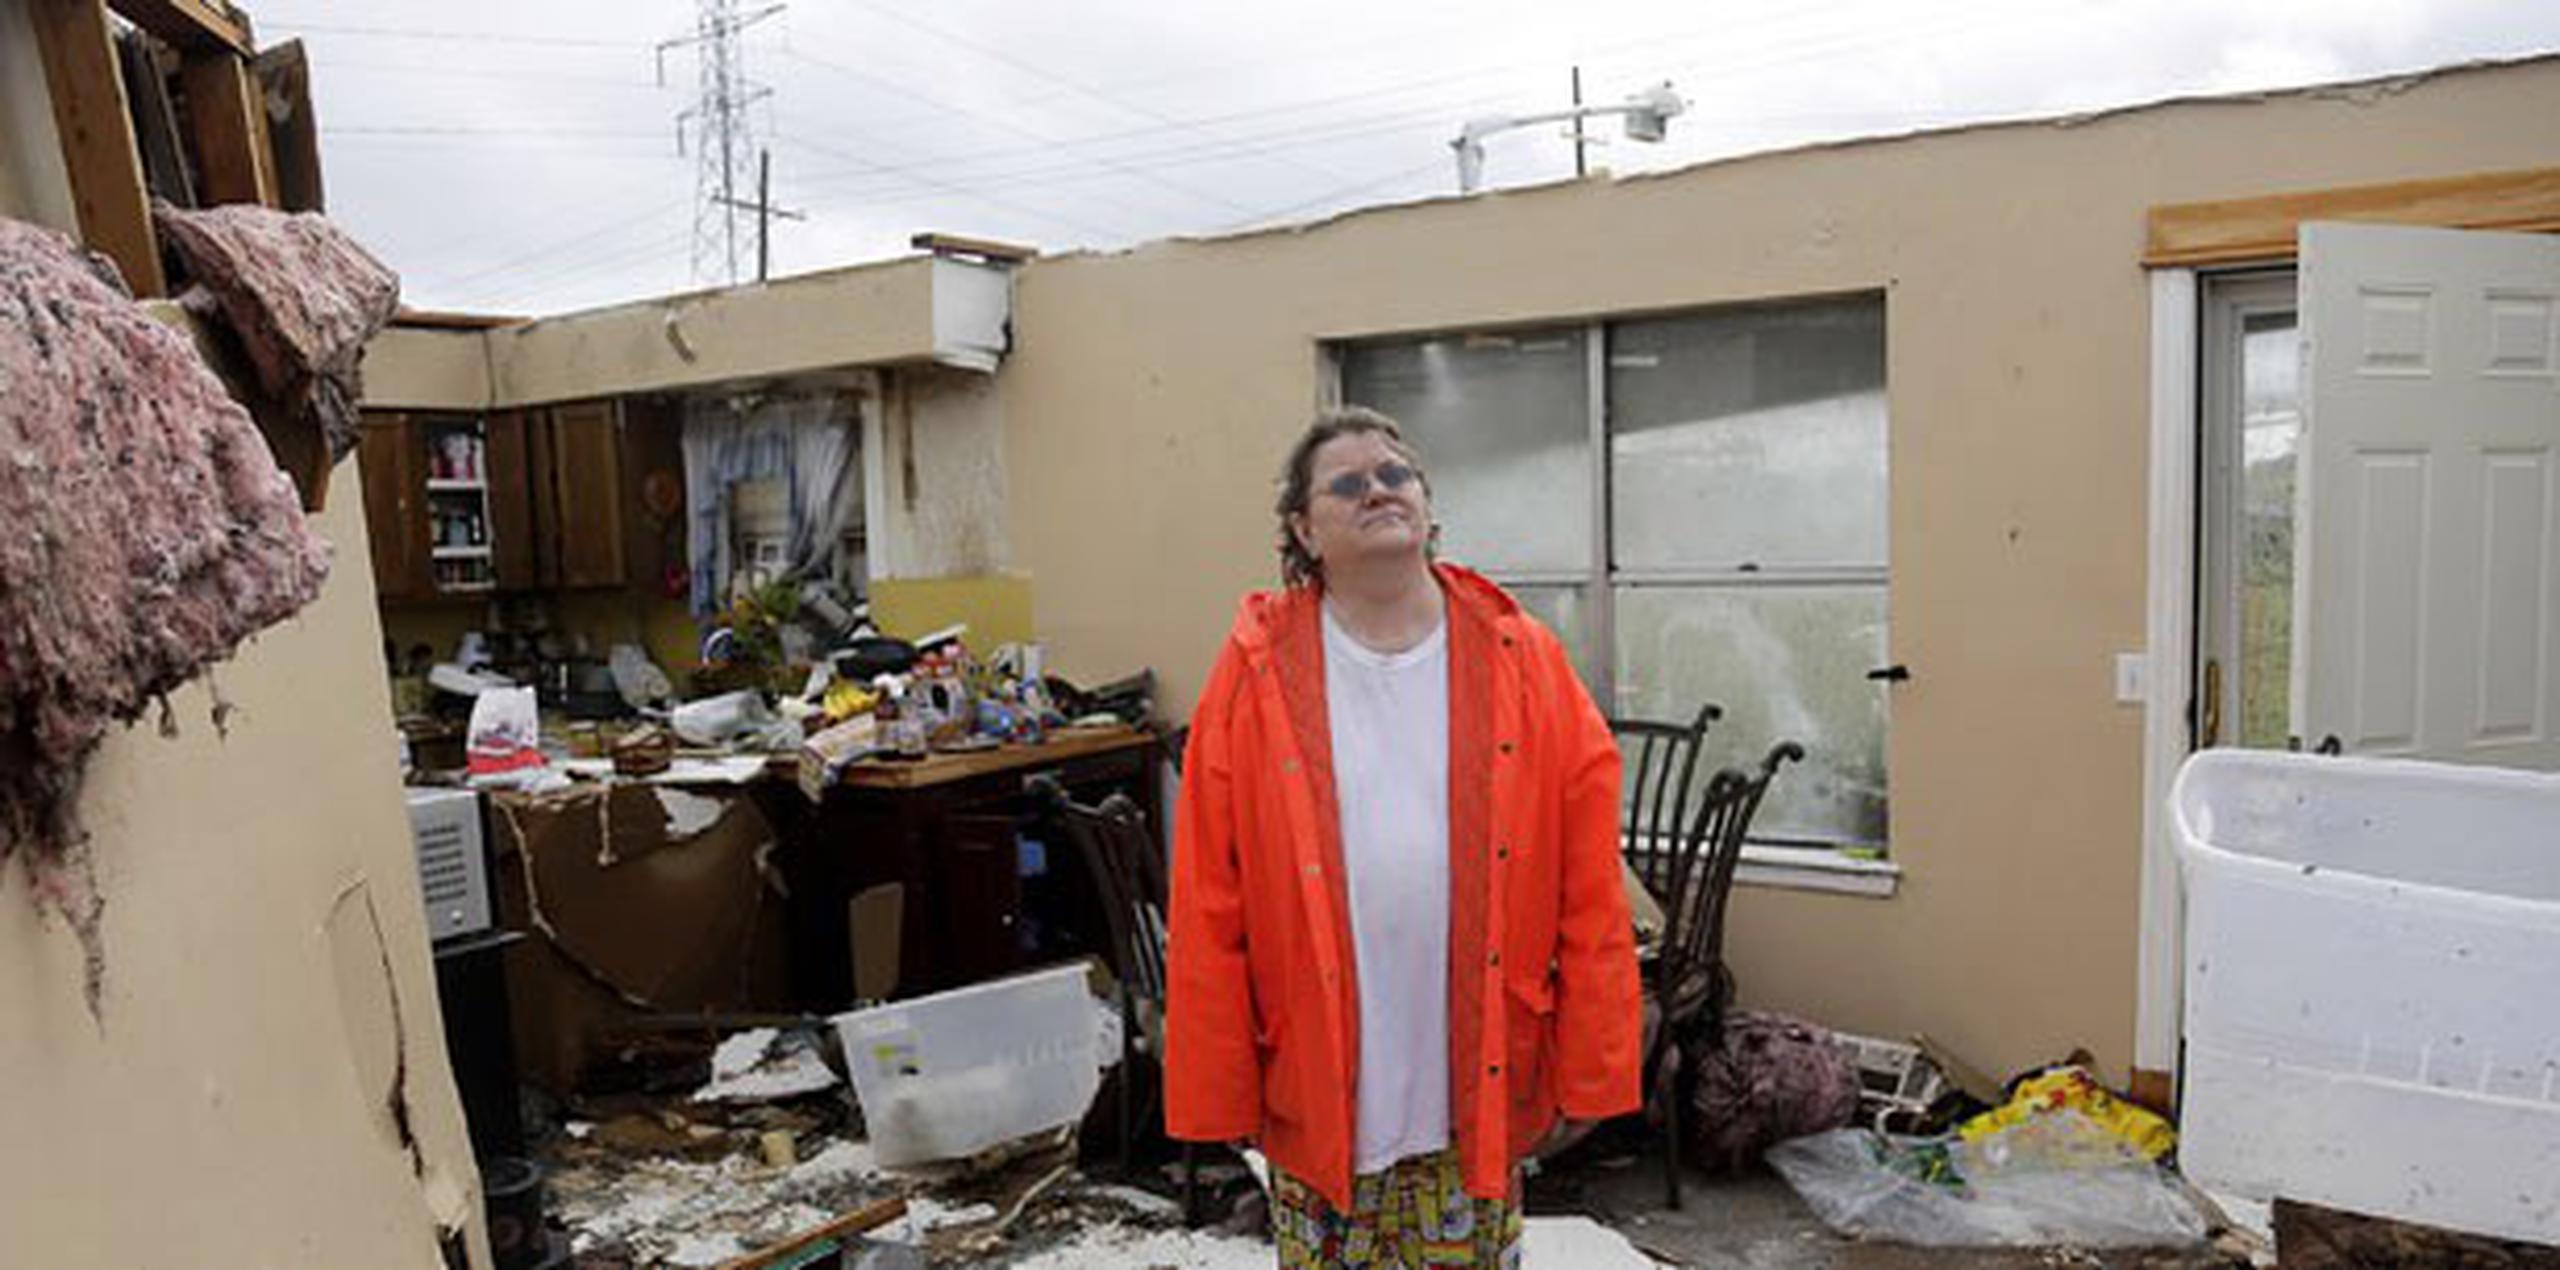 De acuerdo con autoridades de emergencias en Oklahoma, los mayores daños se presentaron en casas, negocios y líneas eléctricas.(Mike Simons/Tulsa World via AP)
